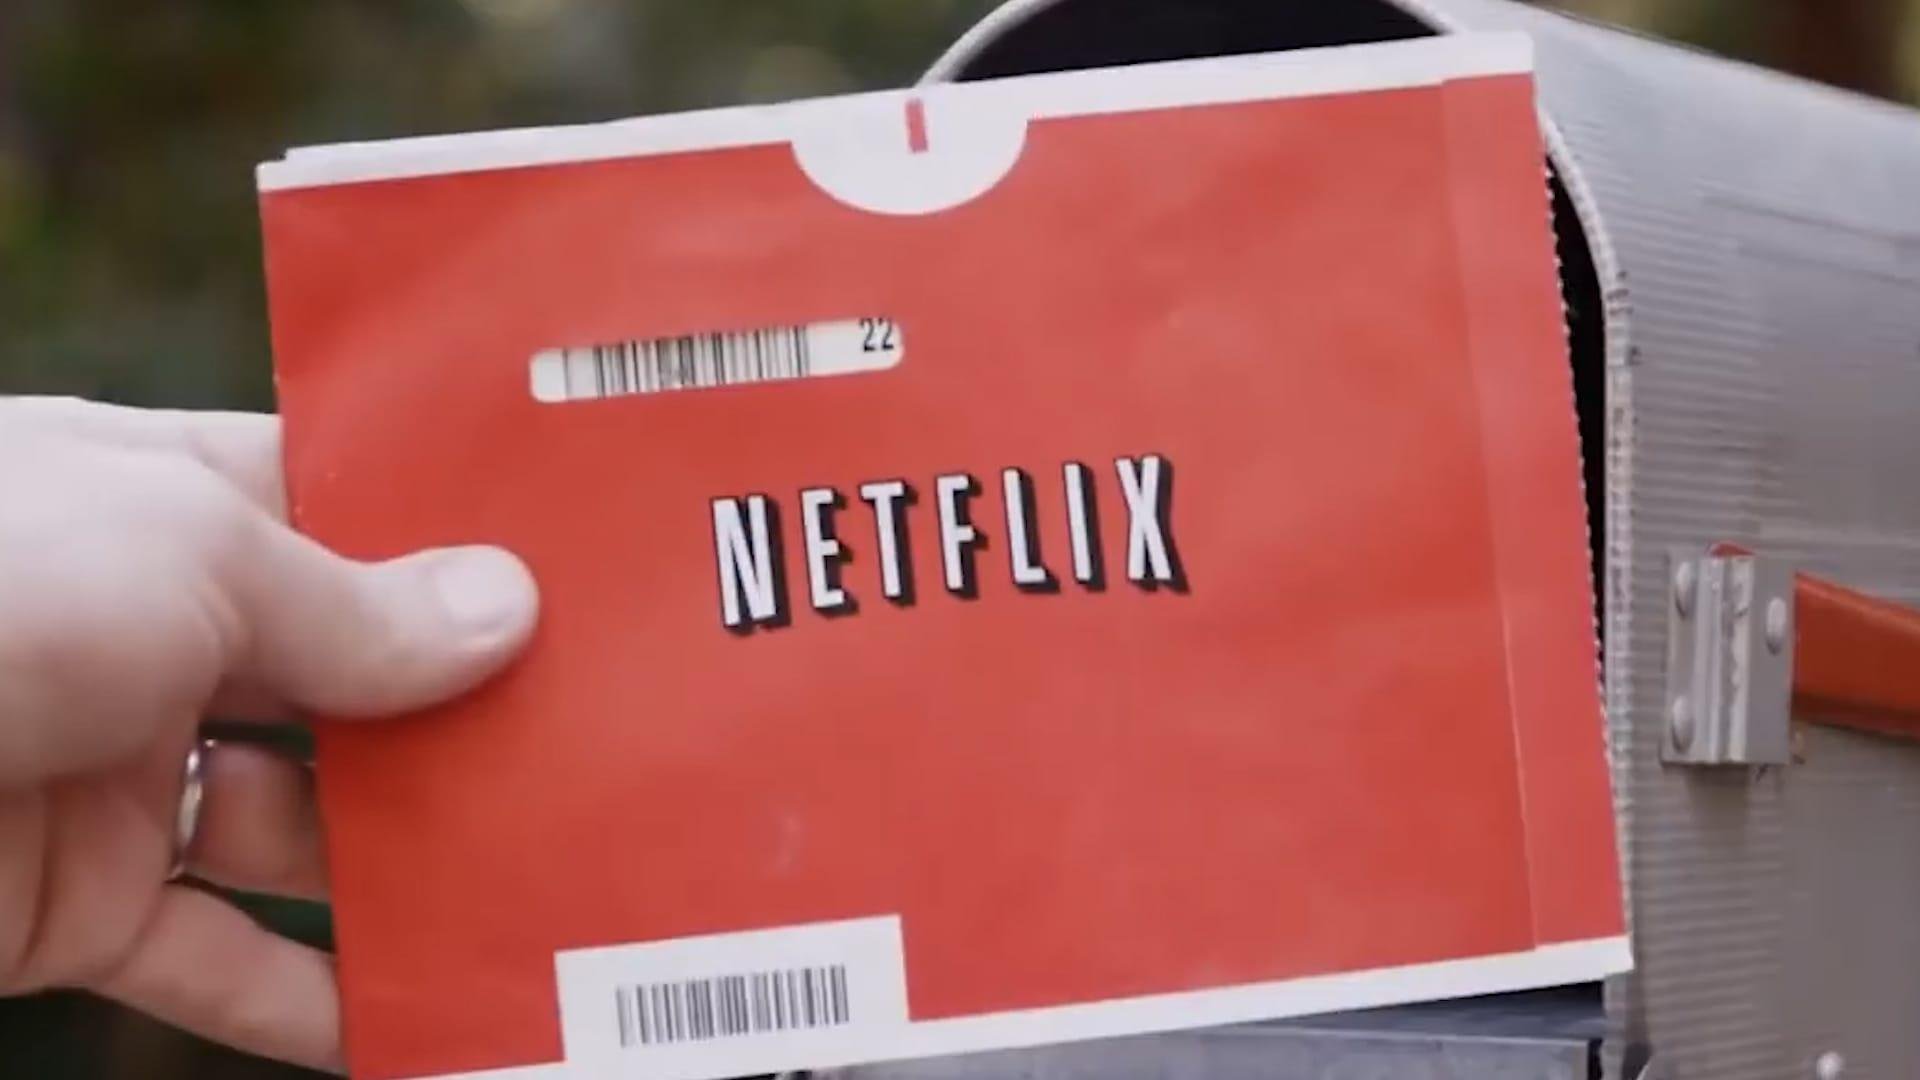 Expert! Descubra quais são os 208 códigos secretos da Netflix